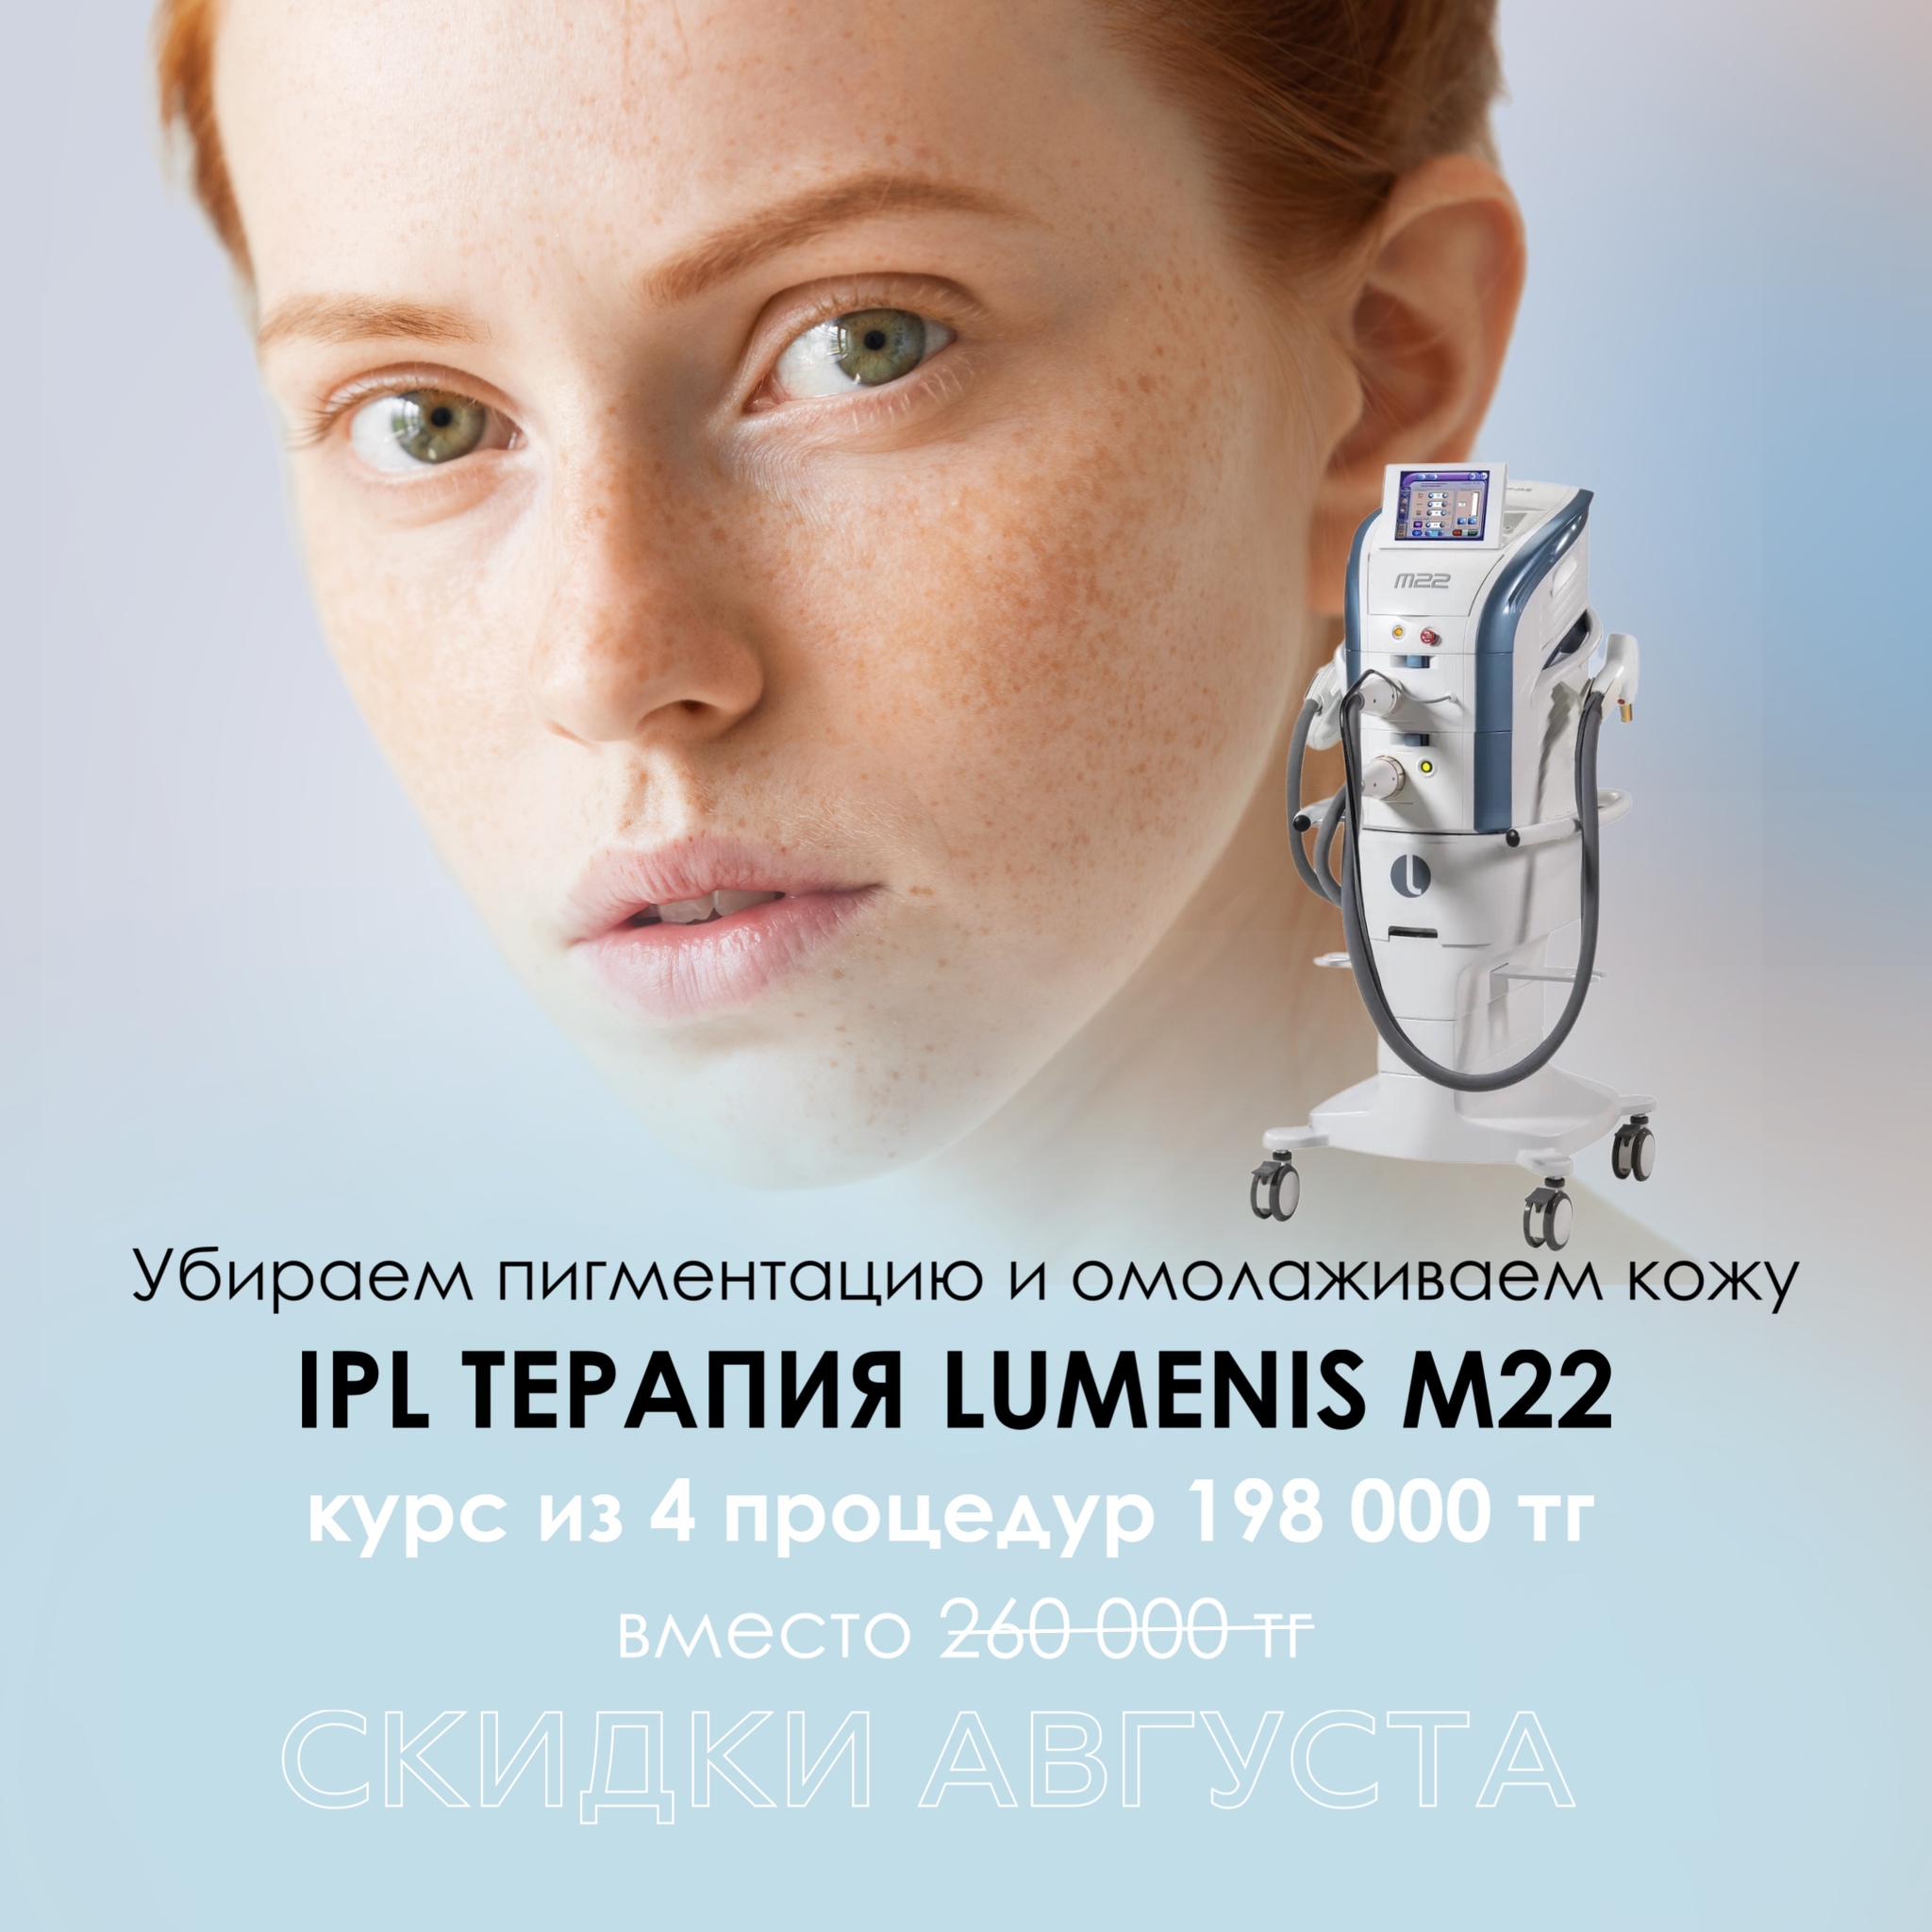 Впервые скидка на IPL терапию на аппарате Lumenis M22